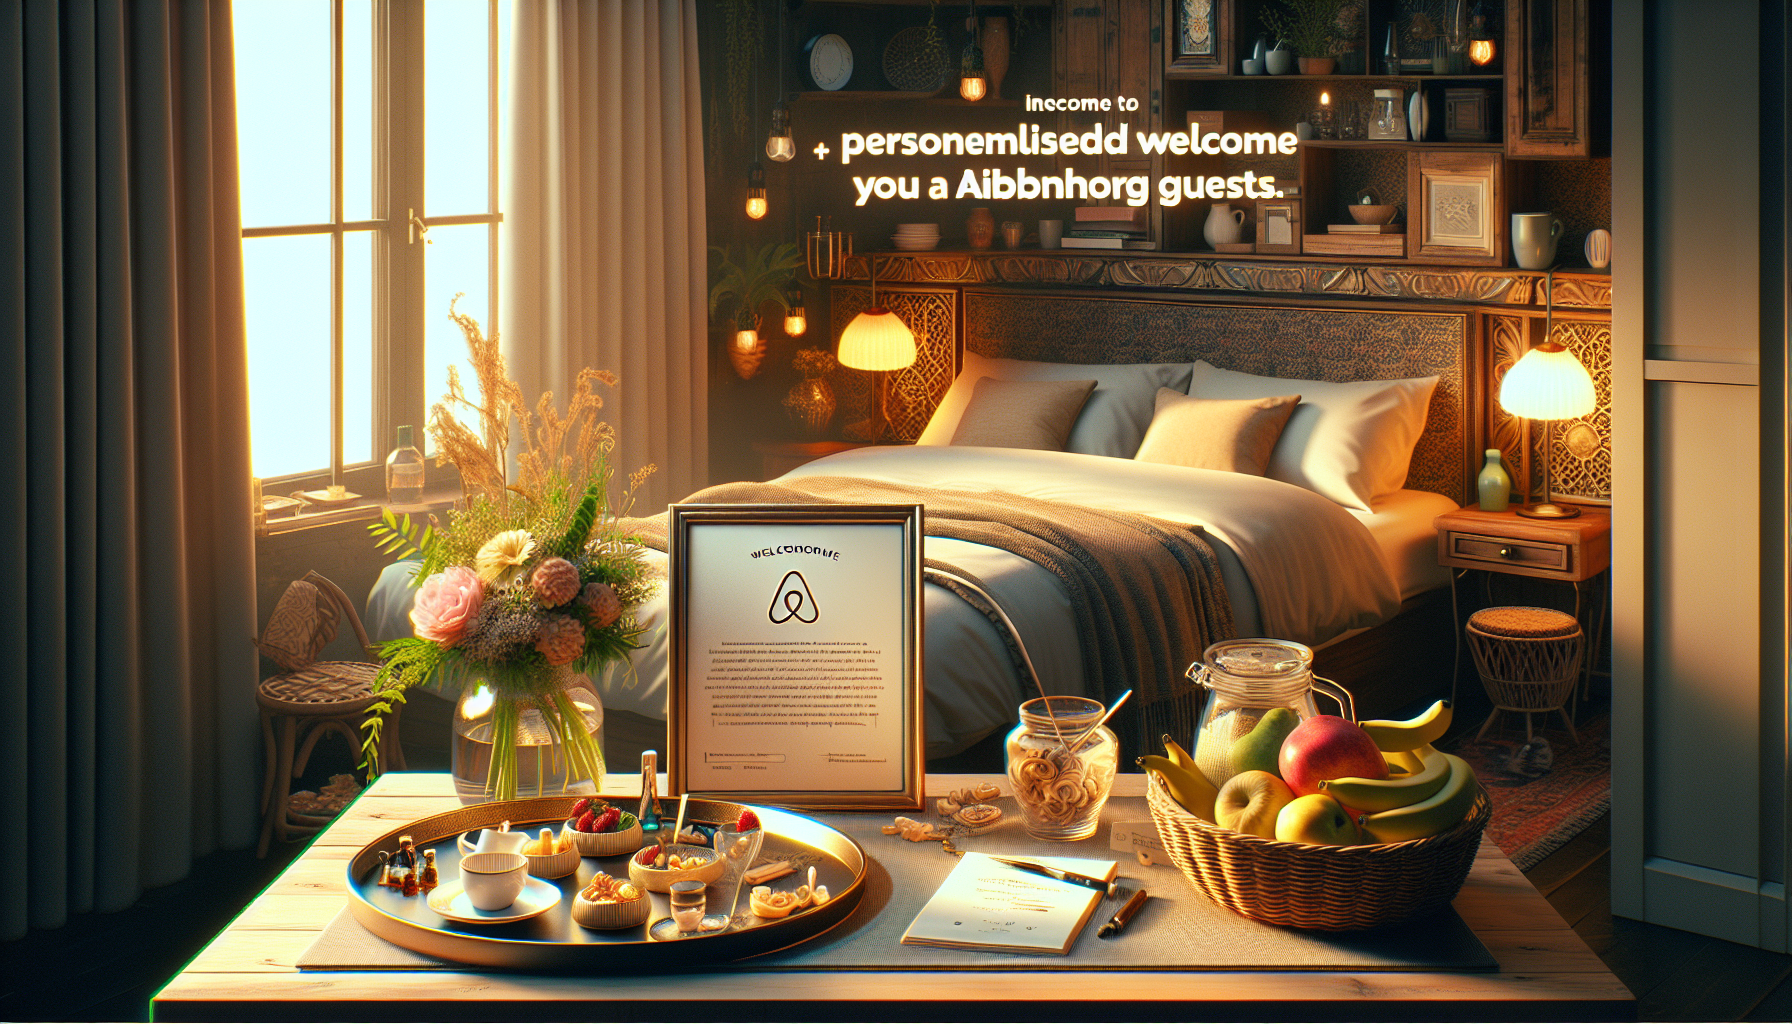 découvrez comment offrir un accueil sur mesure à vos hôtes airbnb pour garantir une expérience unique et mémorable grâce à nos conseils pratiques.